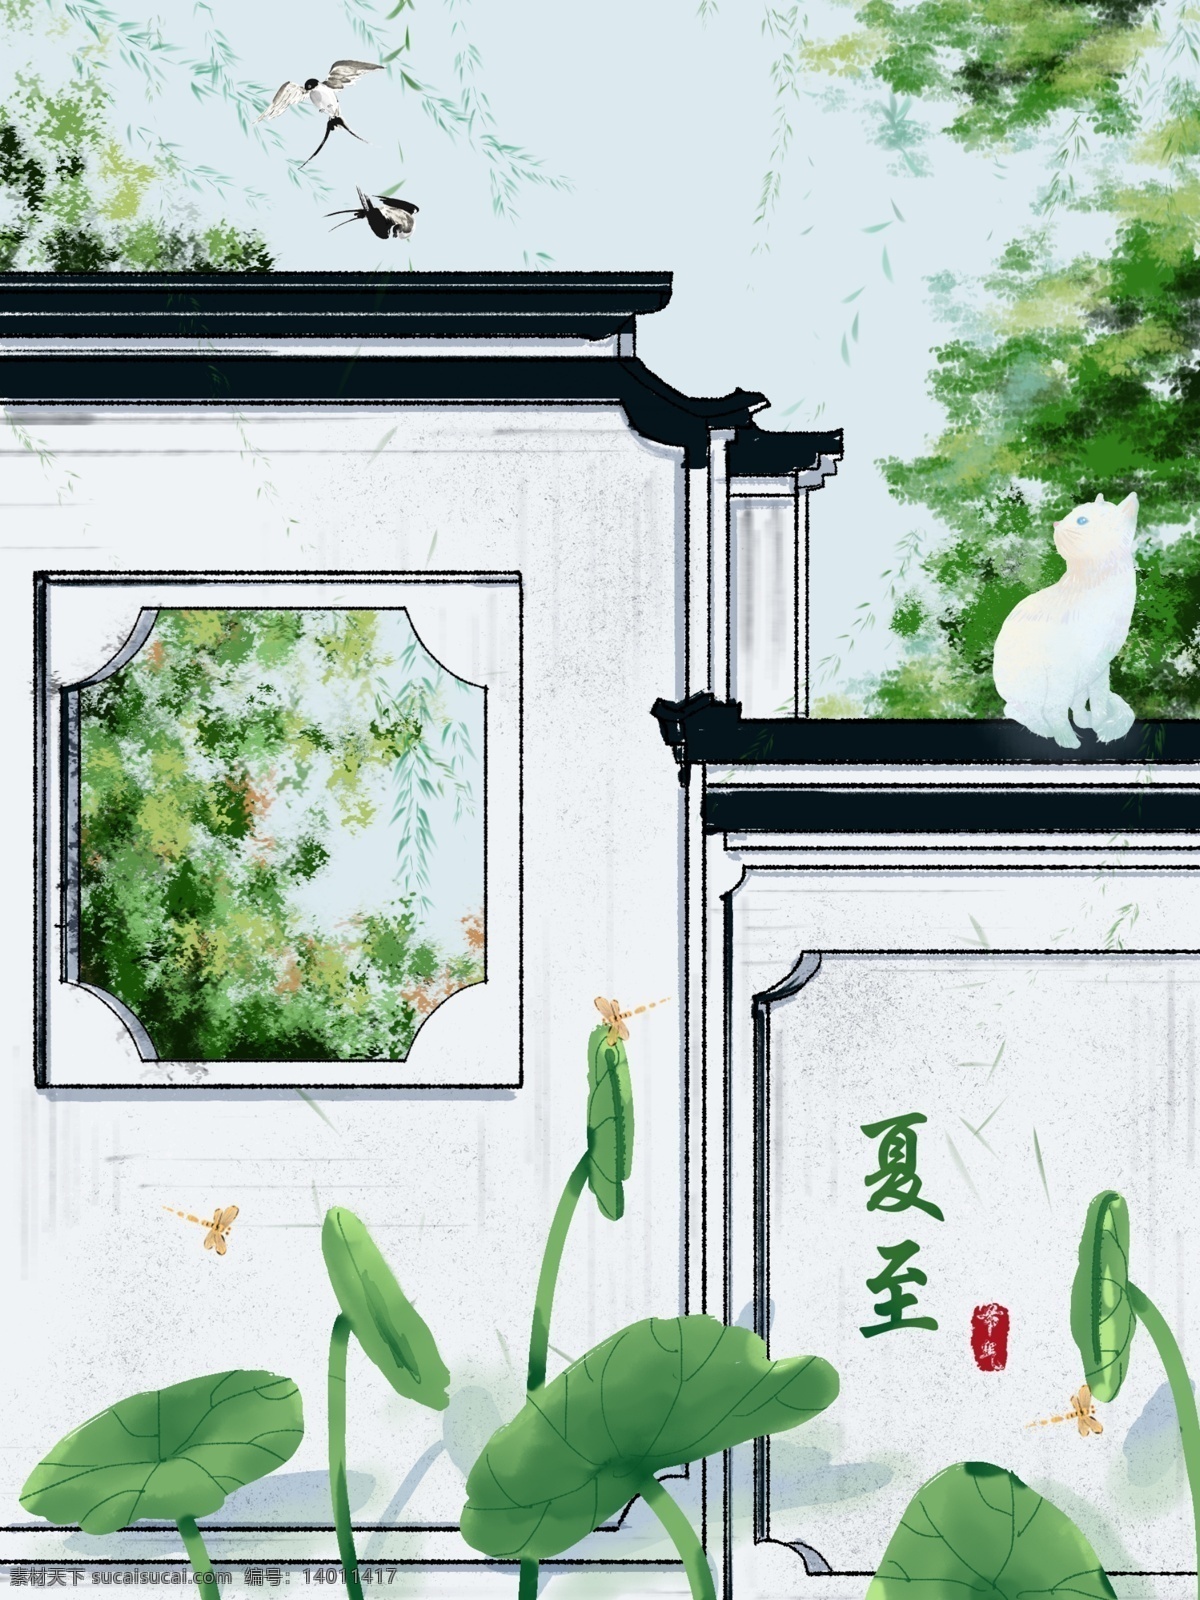 原创 手绘 夏至 小荷 园林建筑 插画 二十四节气 荷叶 猫咪 蜻蜓 植物 建筑 园林